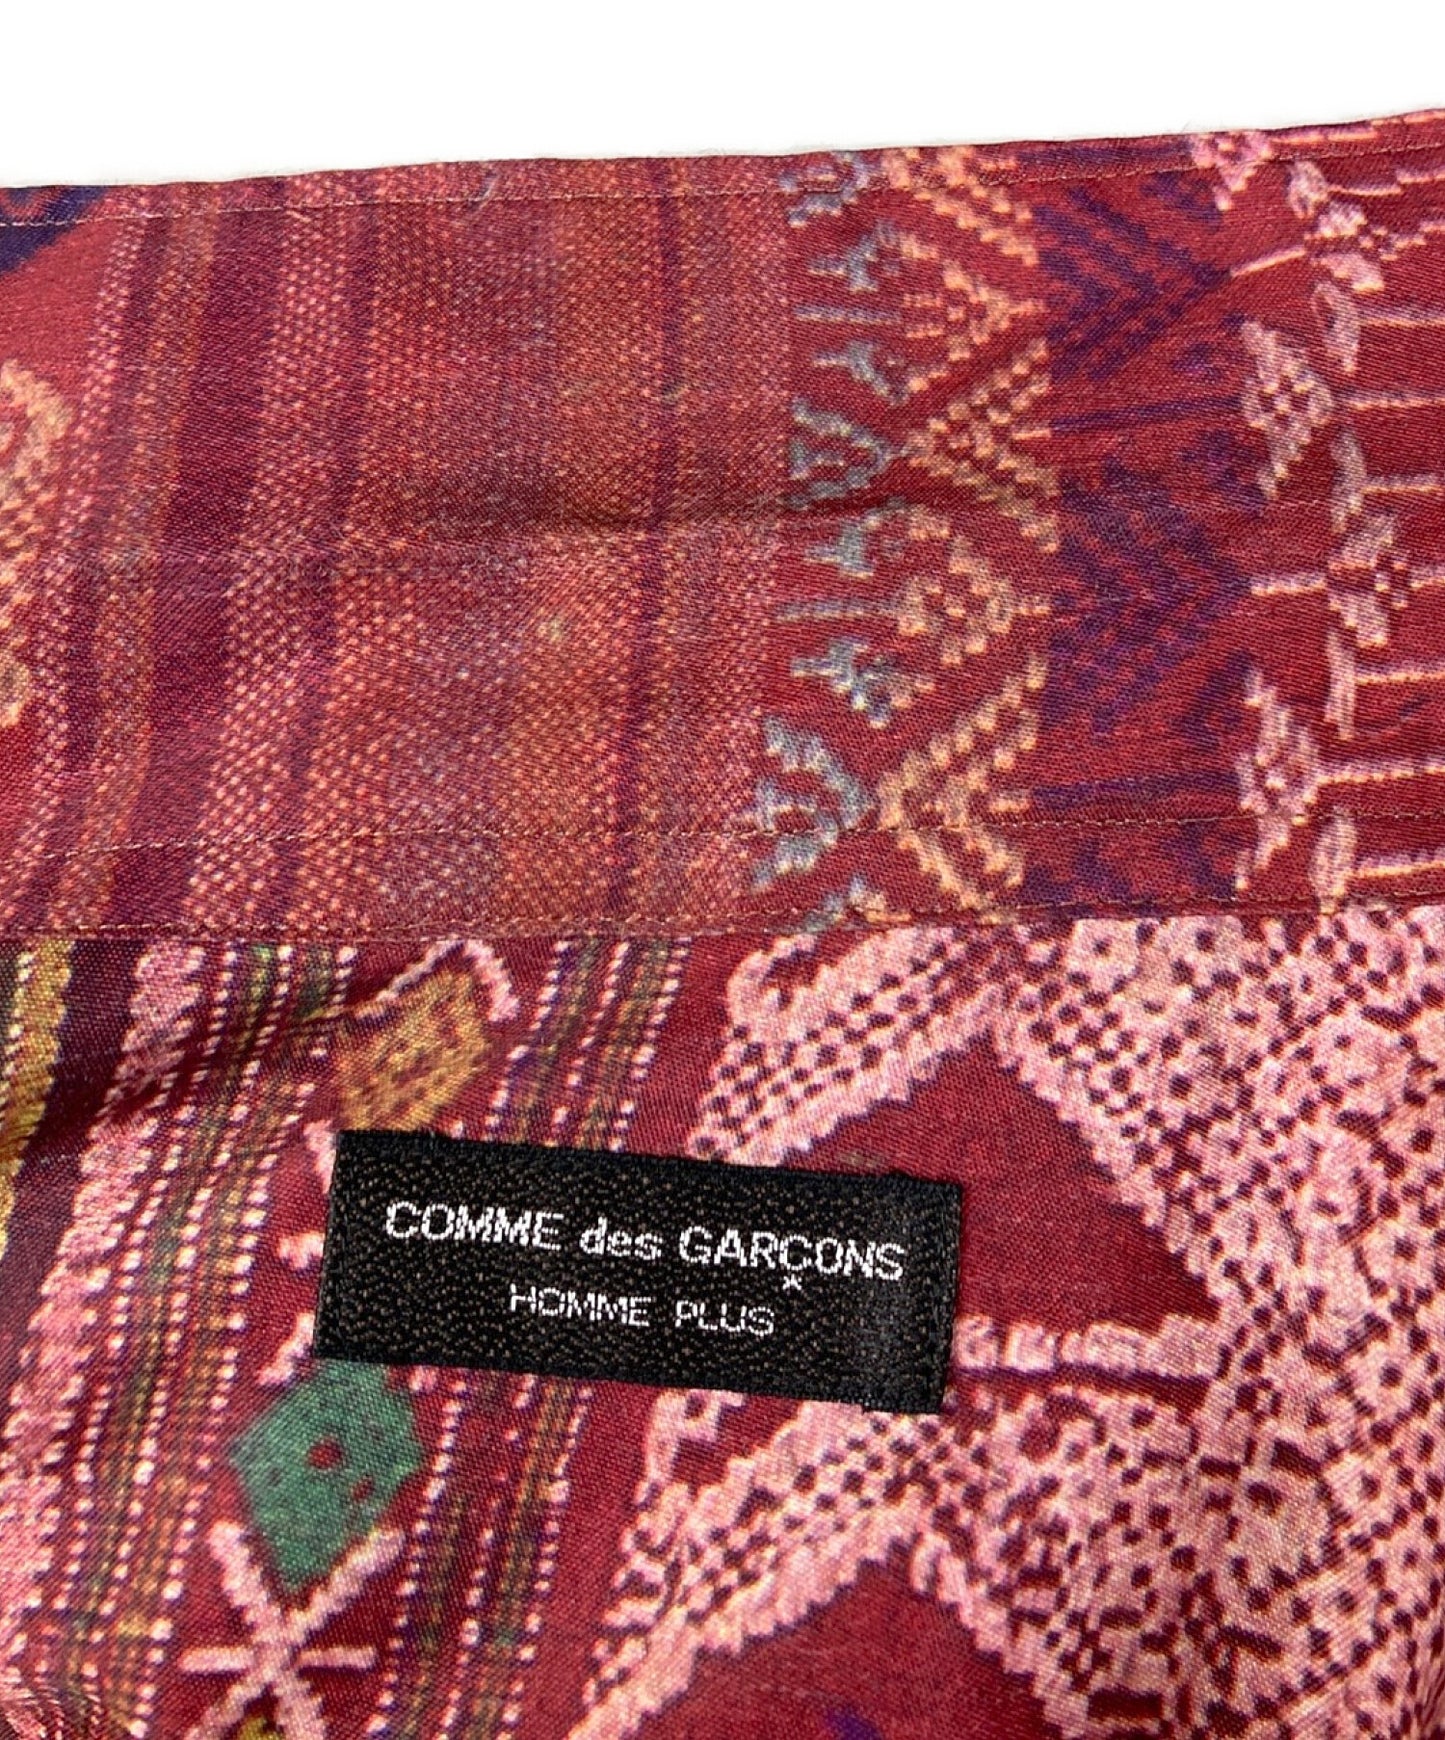 Comme des Garcons Homme Plus 92SS種族轉移印刷開放項圈Poly Shirt PB-10230